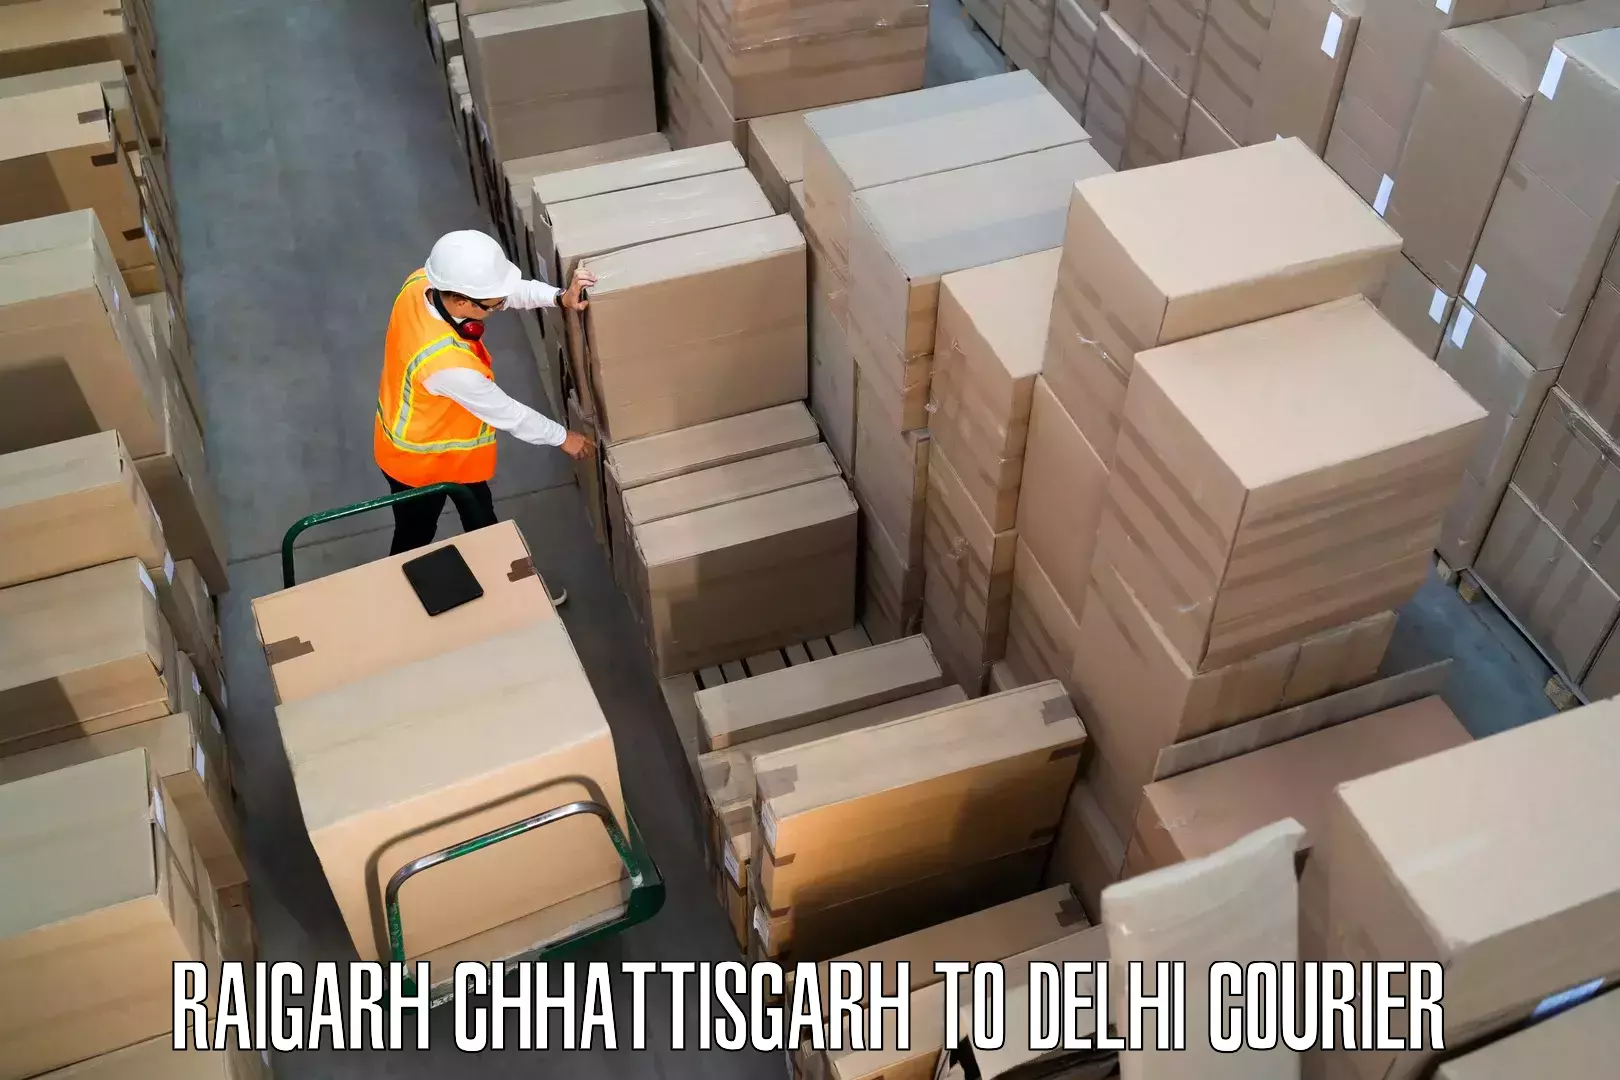 Furniture delivery service Raigarh Chhattisgarh to Jhilmil